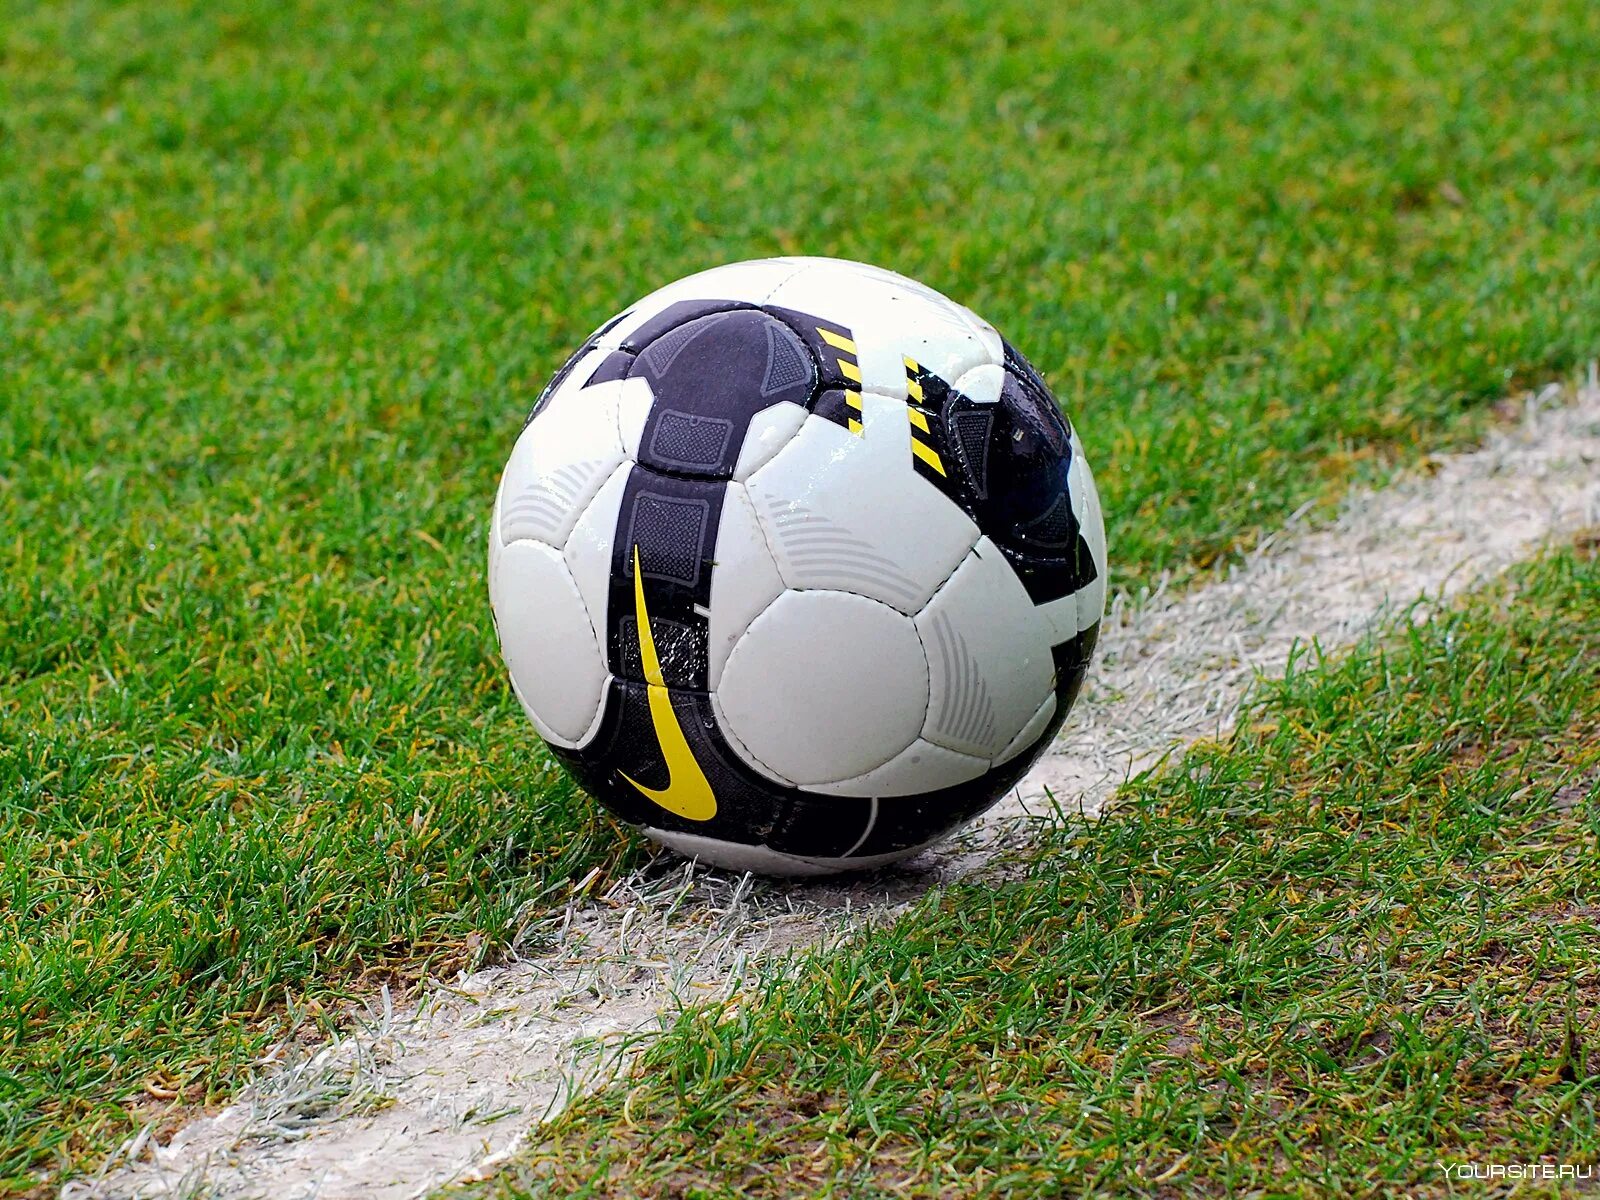 Футбольный мяч. Футбольный мячик. Современный футбольный мяч. Футбольный мяч на траве.